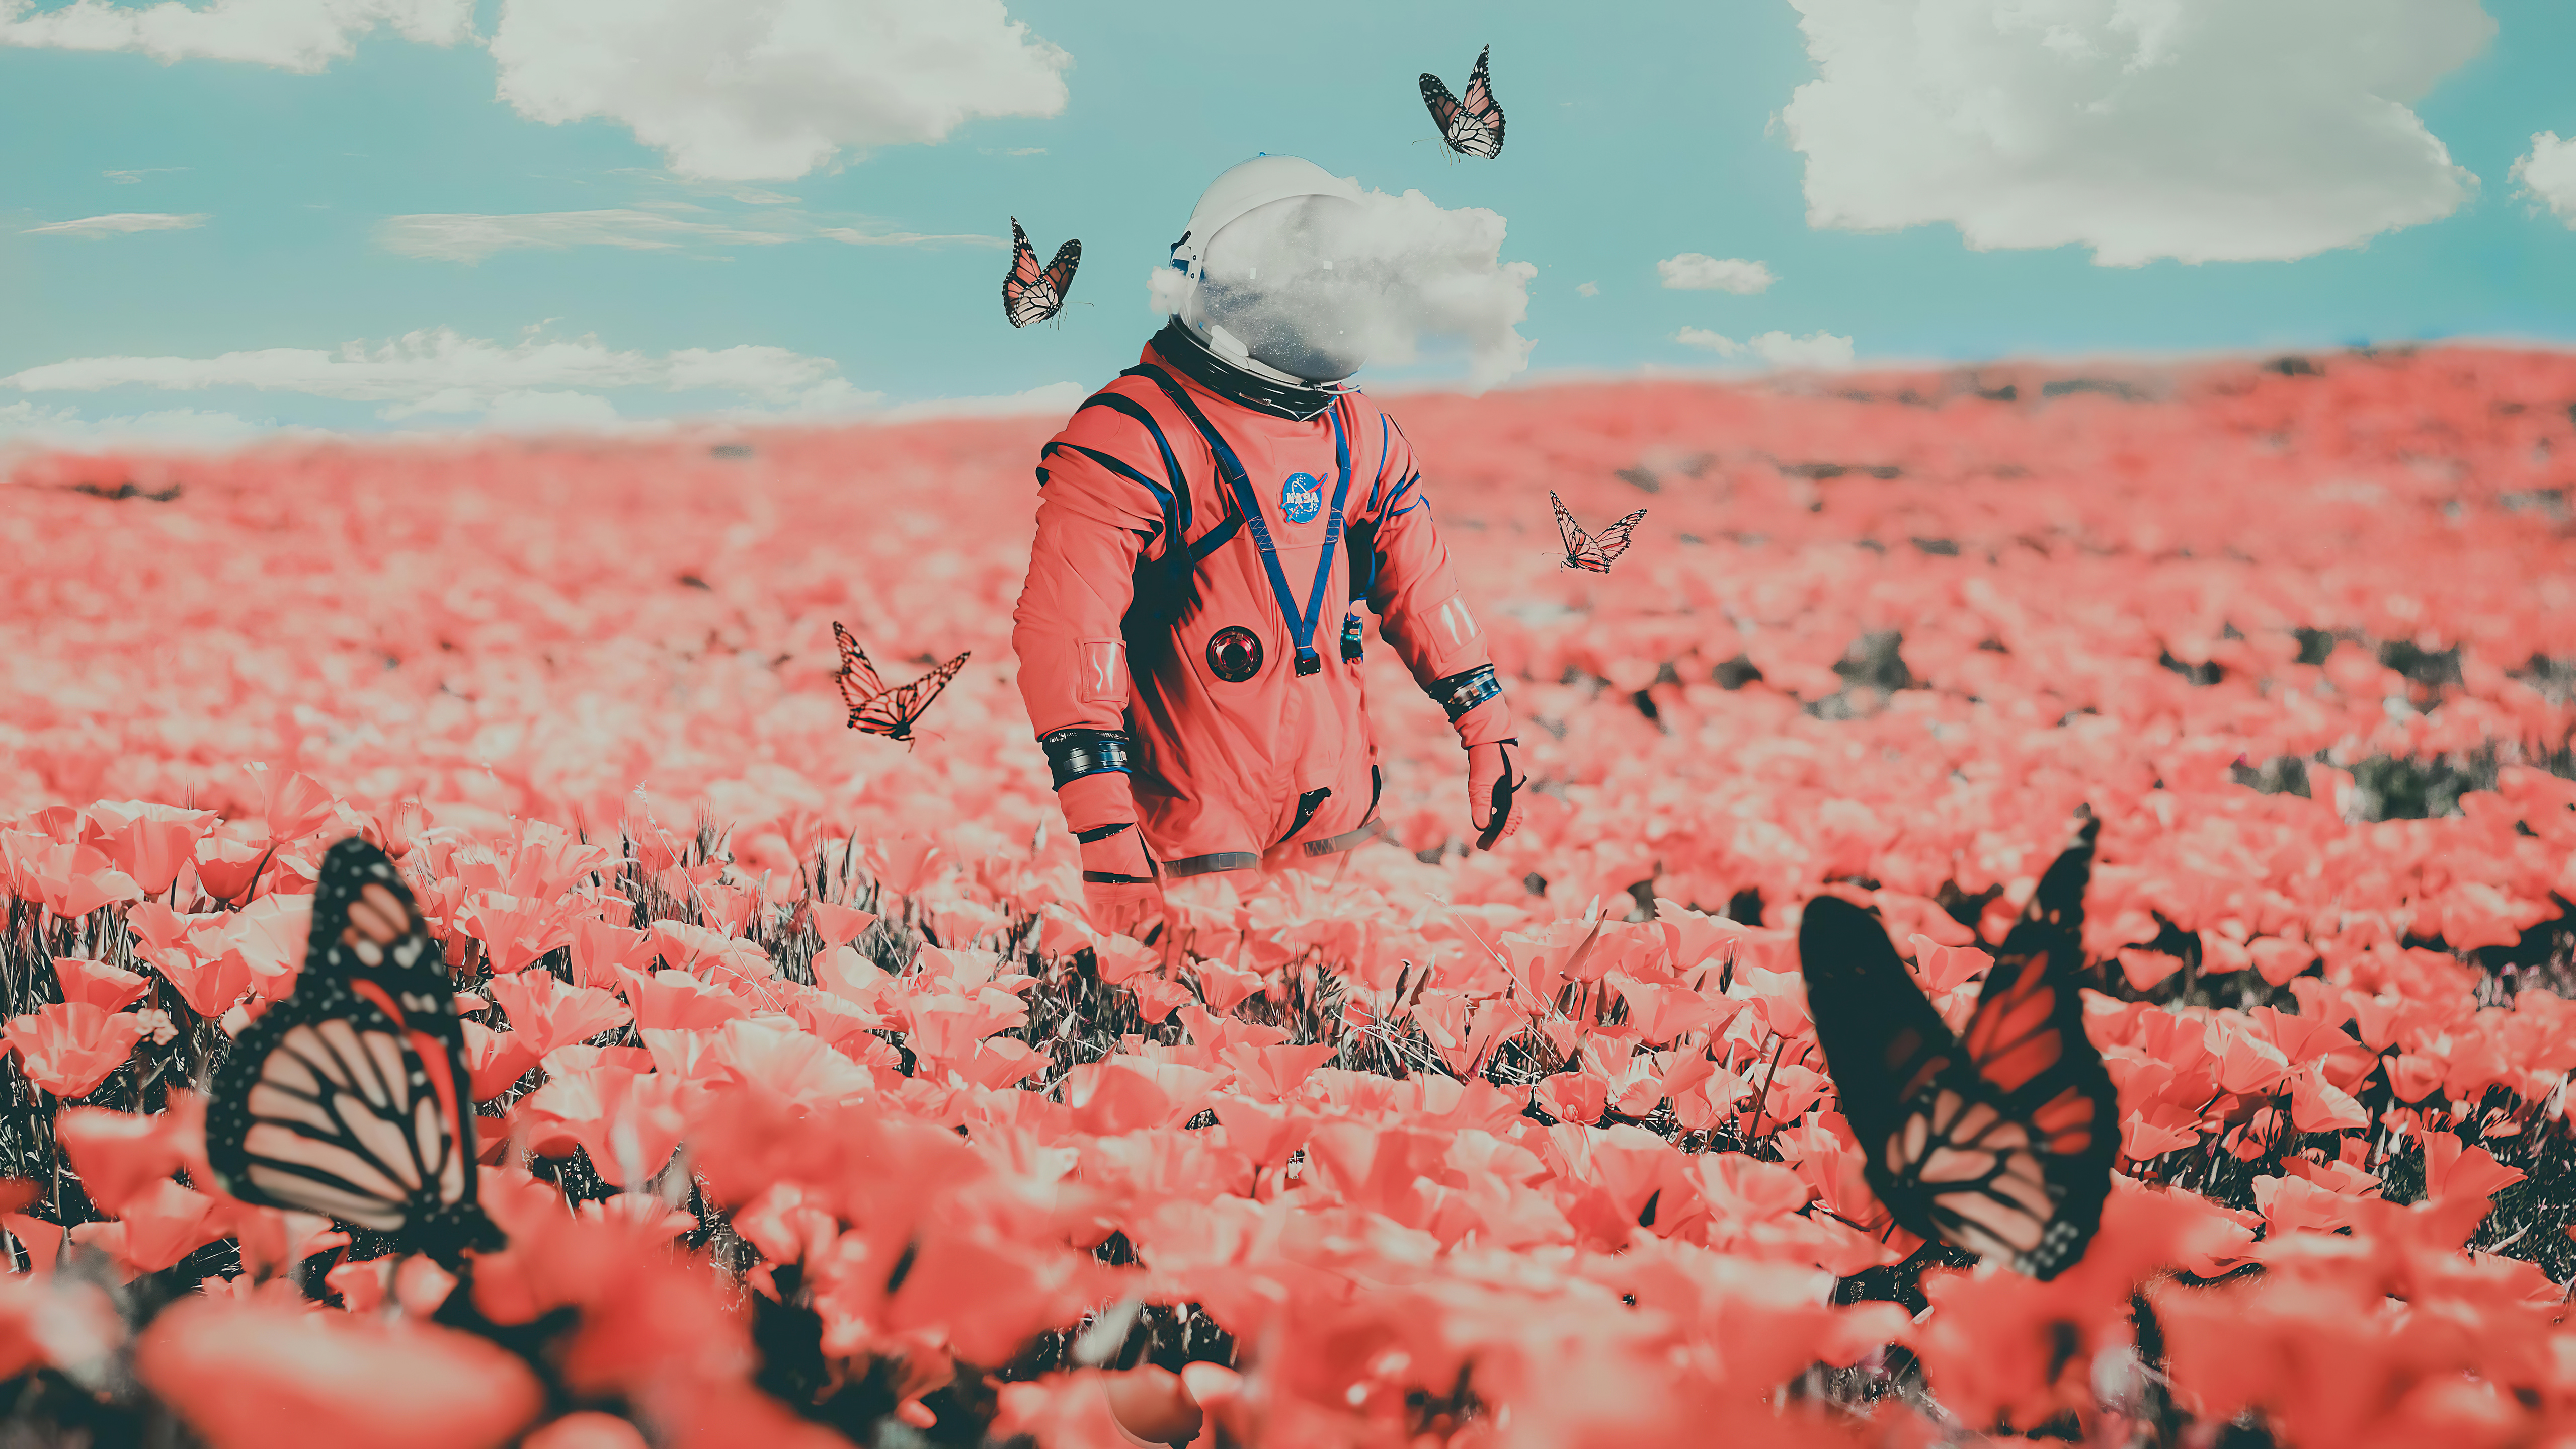 Космонавт в цветах